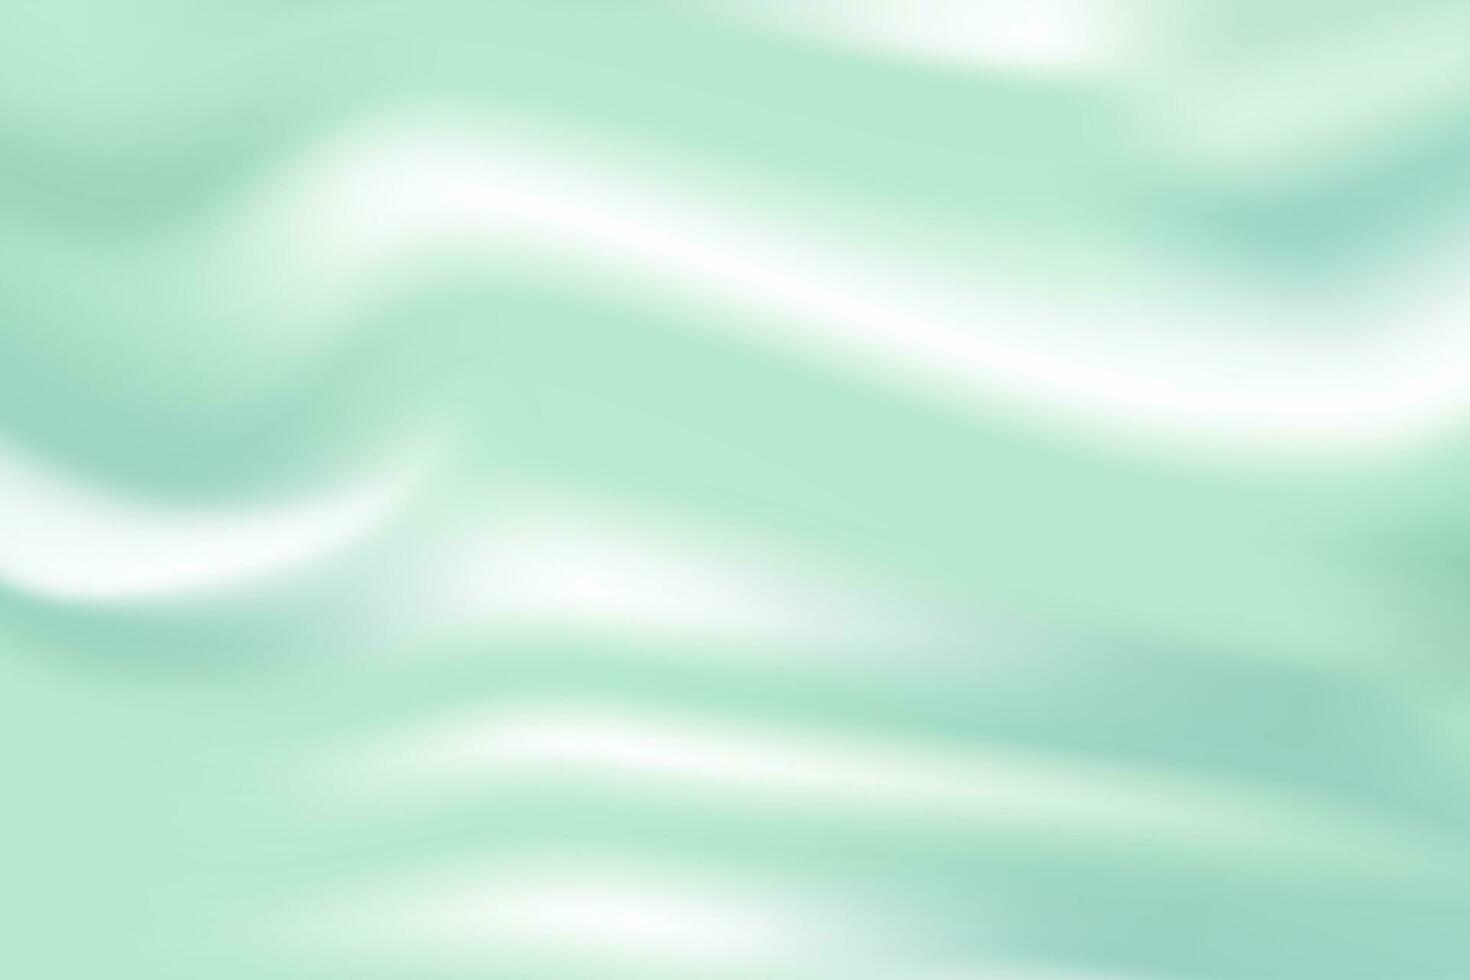 monocromo ligero verde degradado en colores de verde azulado, verde, y menta. vector ilustración. eps 10